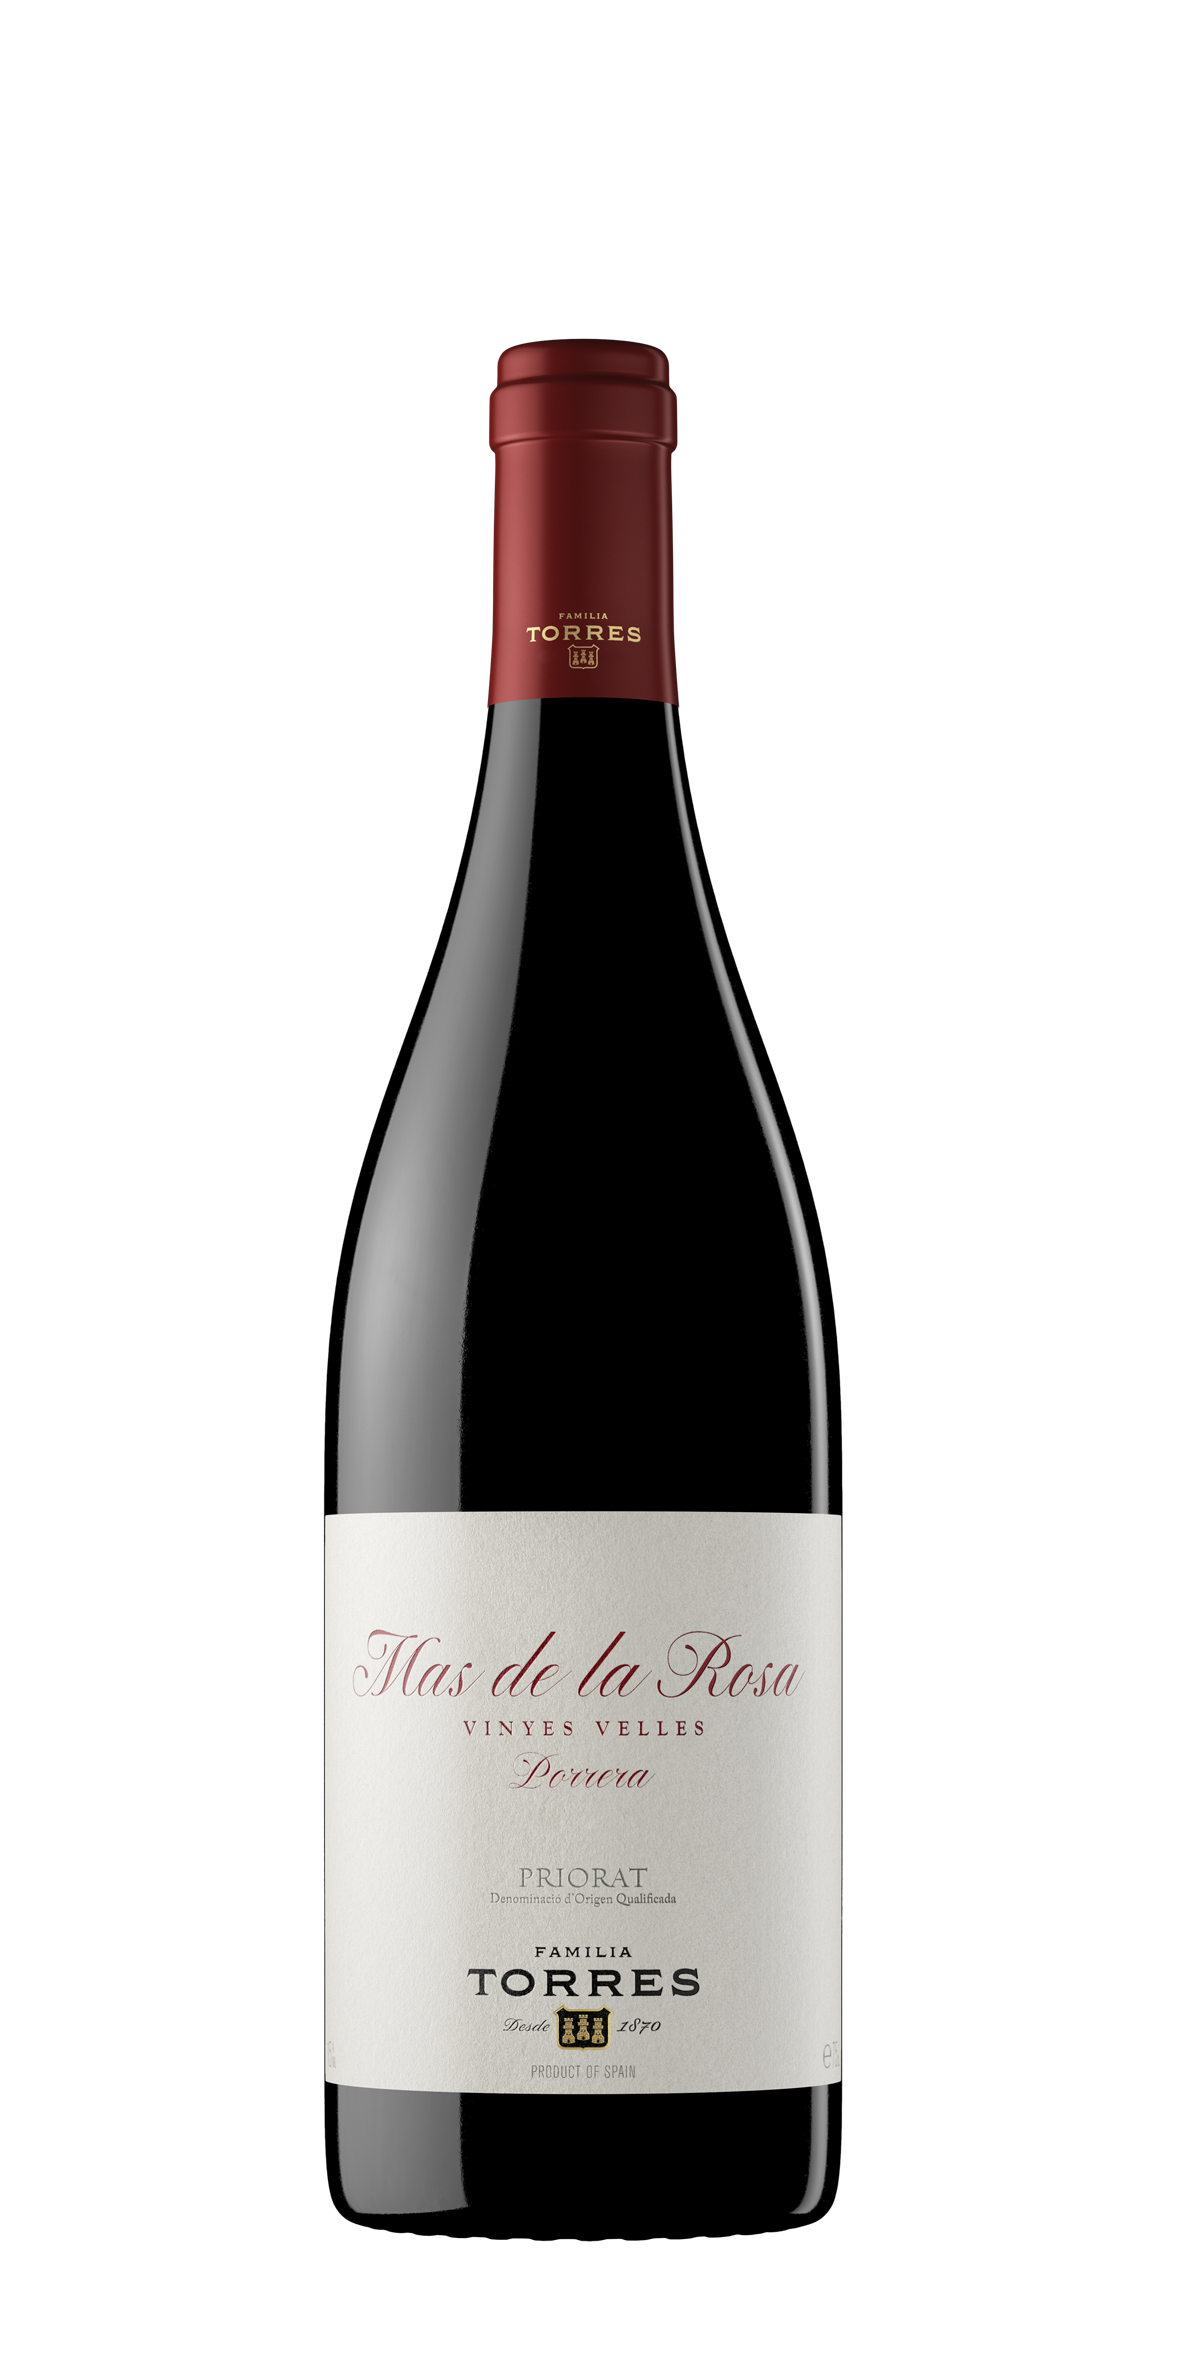 El vino Mas de la Rosa, propiedad de Familia Torres, elaborado en la DOCa Priorat.